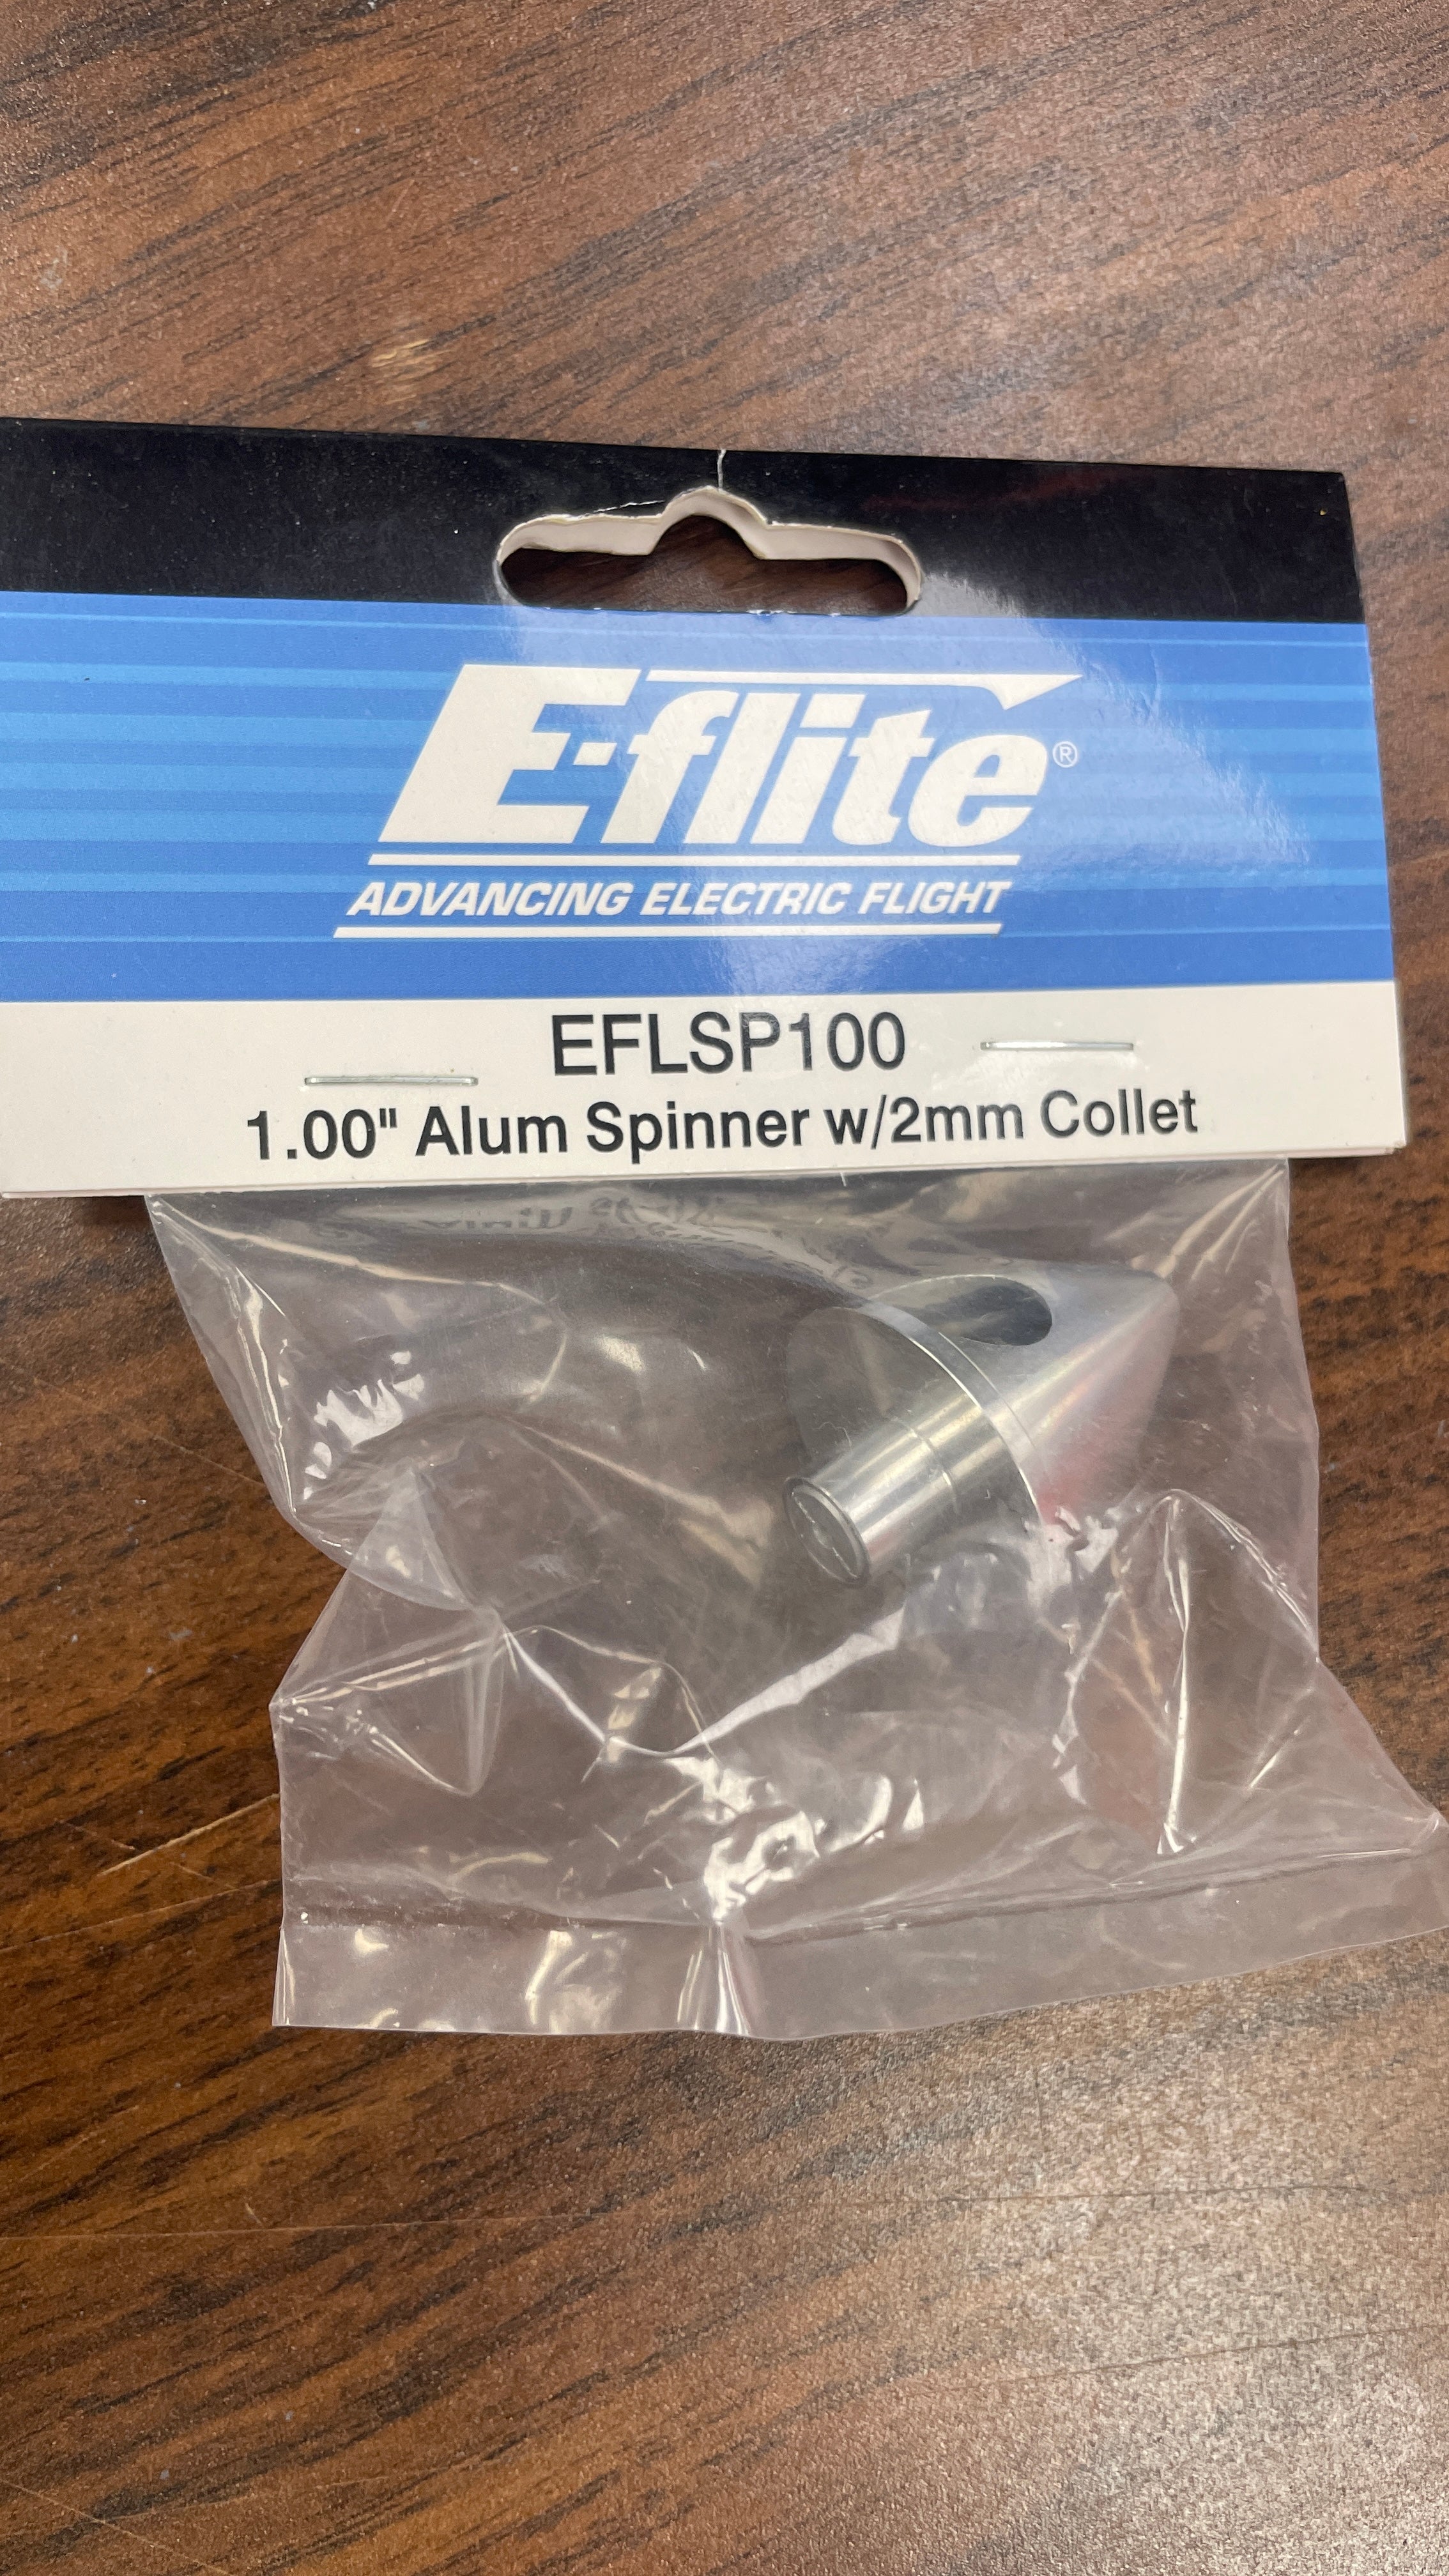 E-flite 1.00" Aluminum Spinner w/ 2mm Collet *Archived